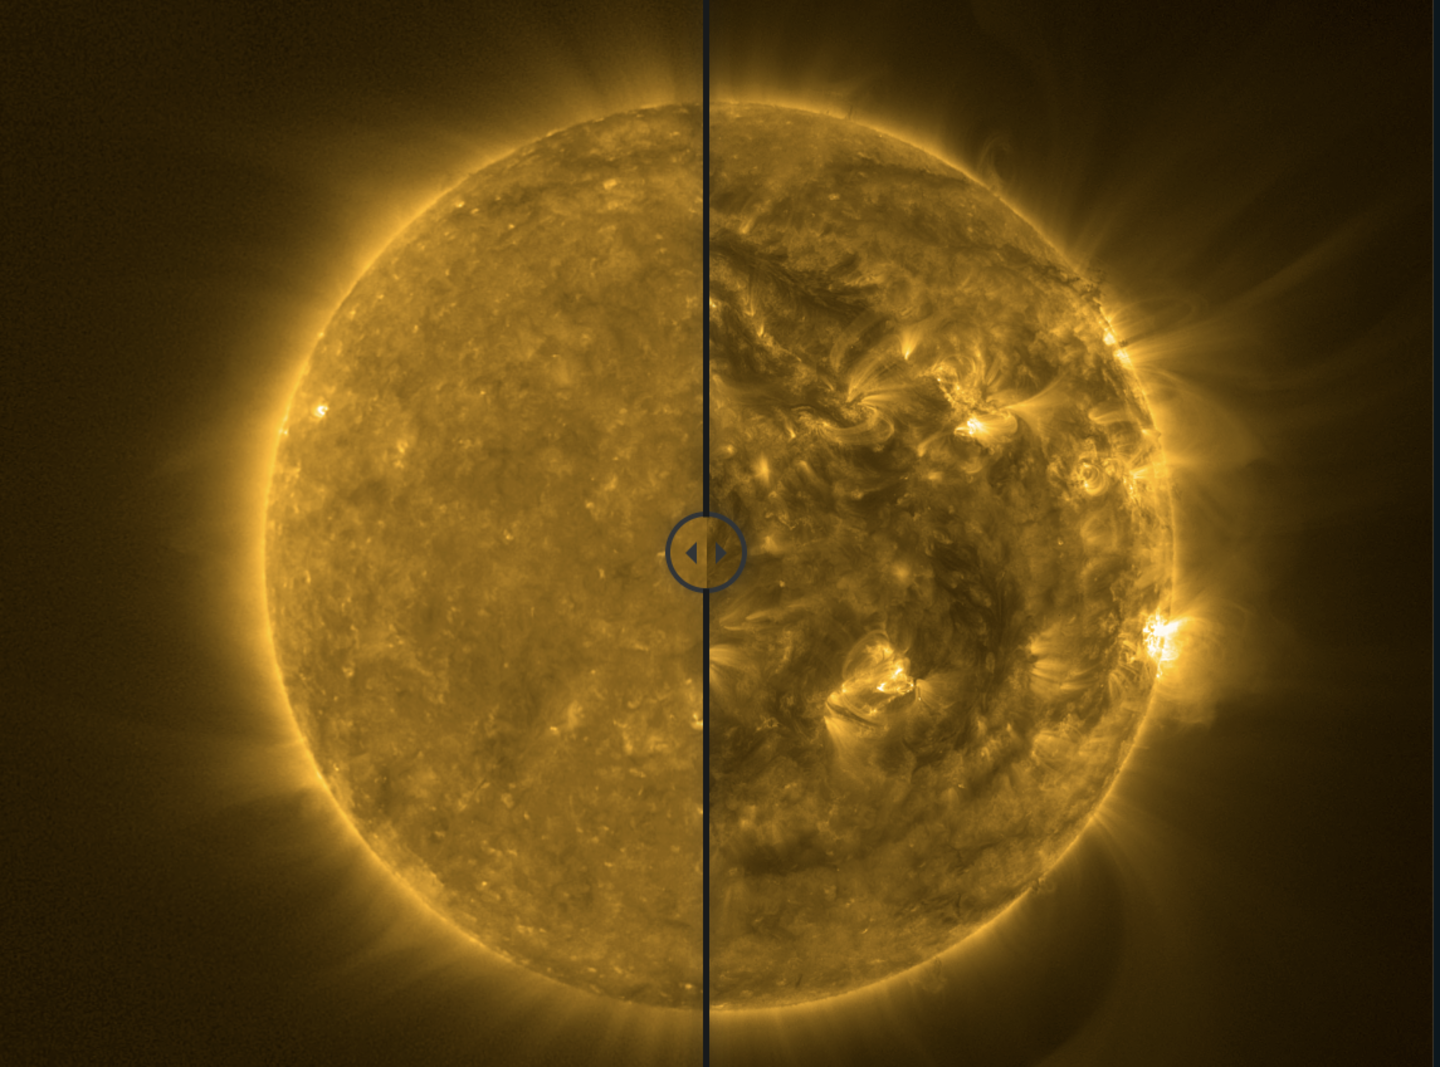 una imagen comparativa del sol en distintas etapas, en 2021 y en 2023